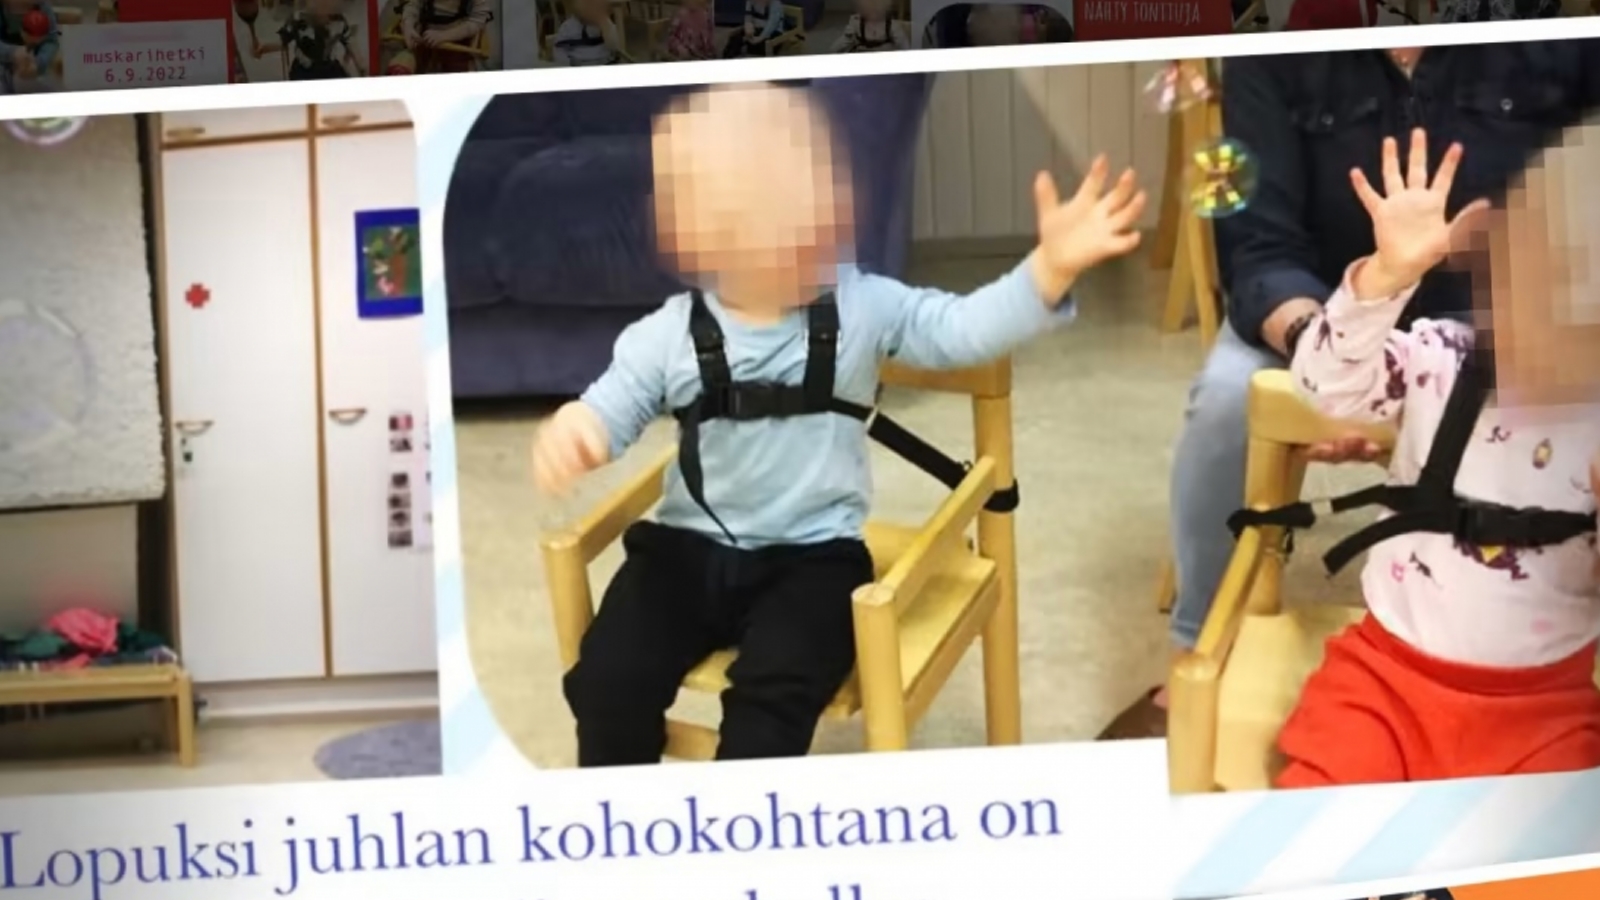 Финляндия: Привязывать малышей ремнями к стульям – законно